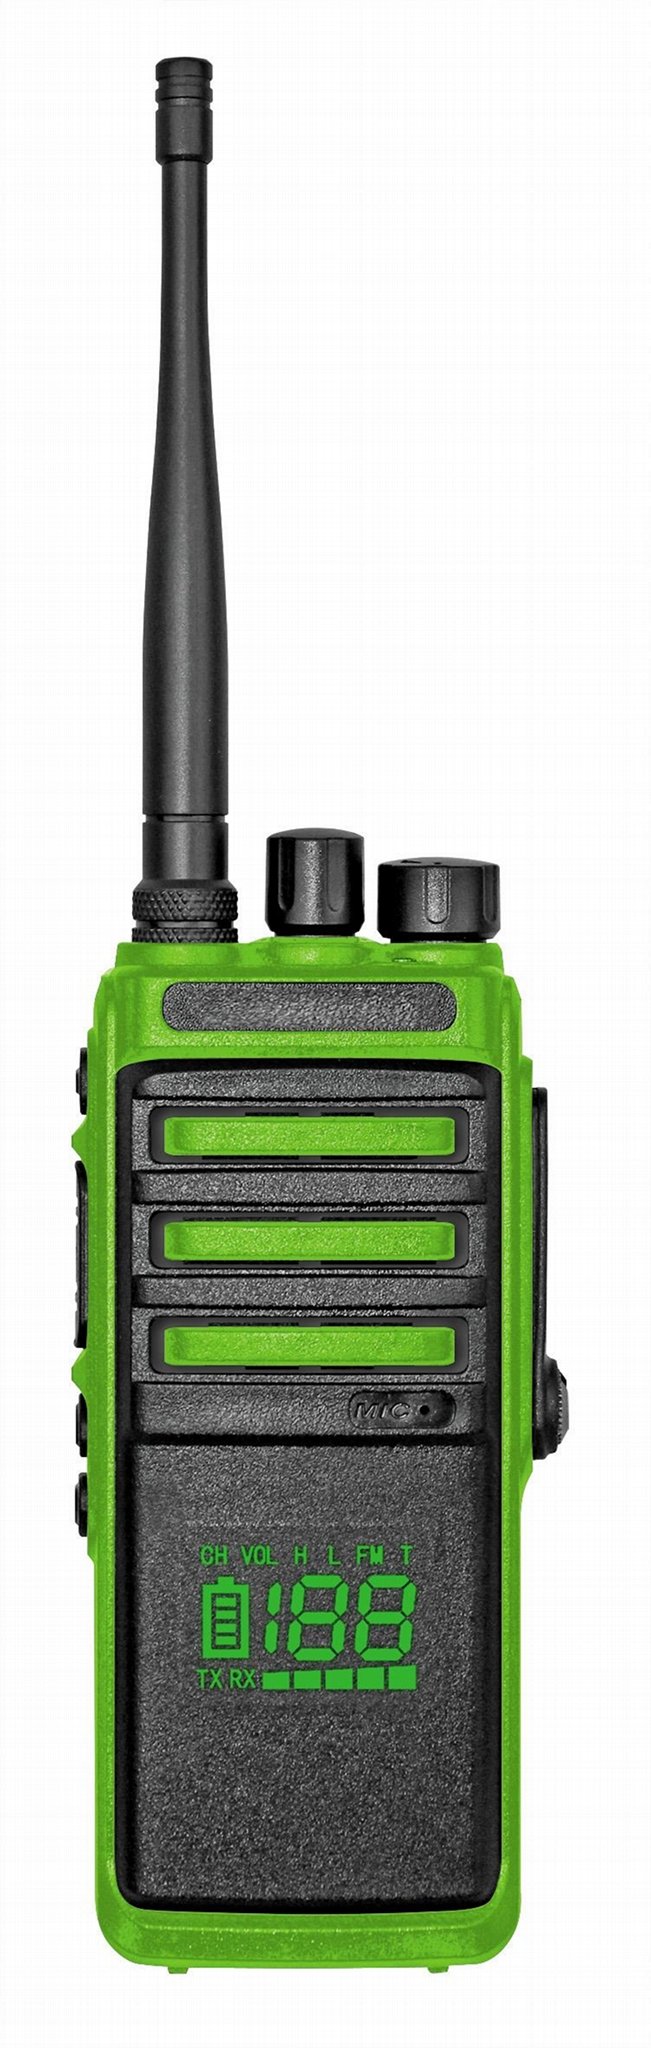 199channels 10watts walkie talkie  2